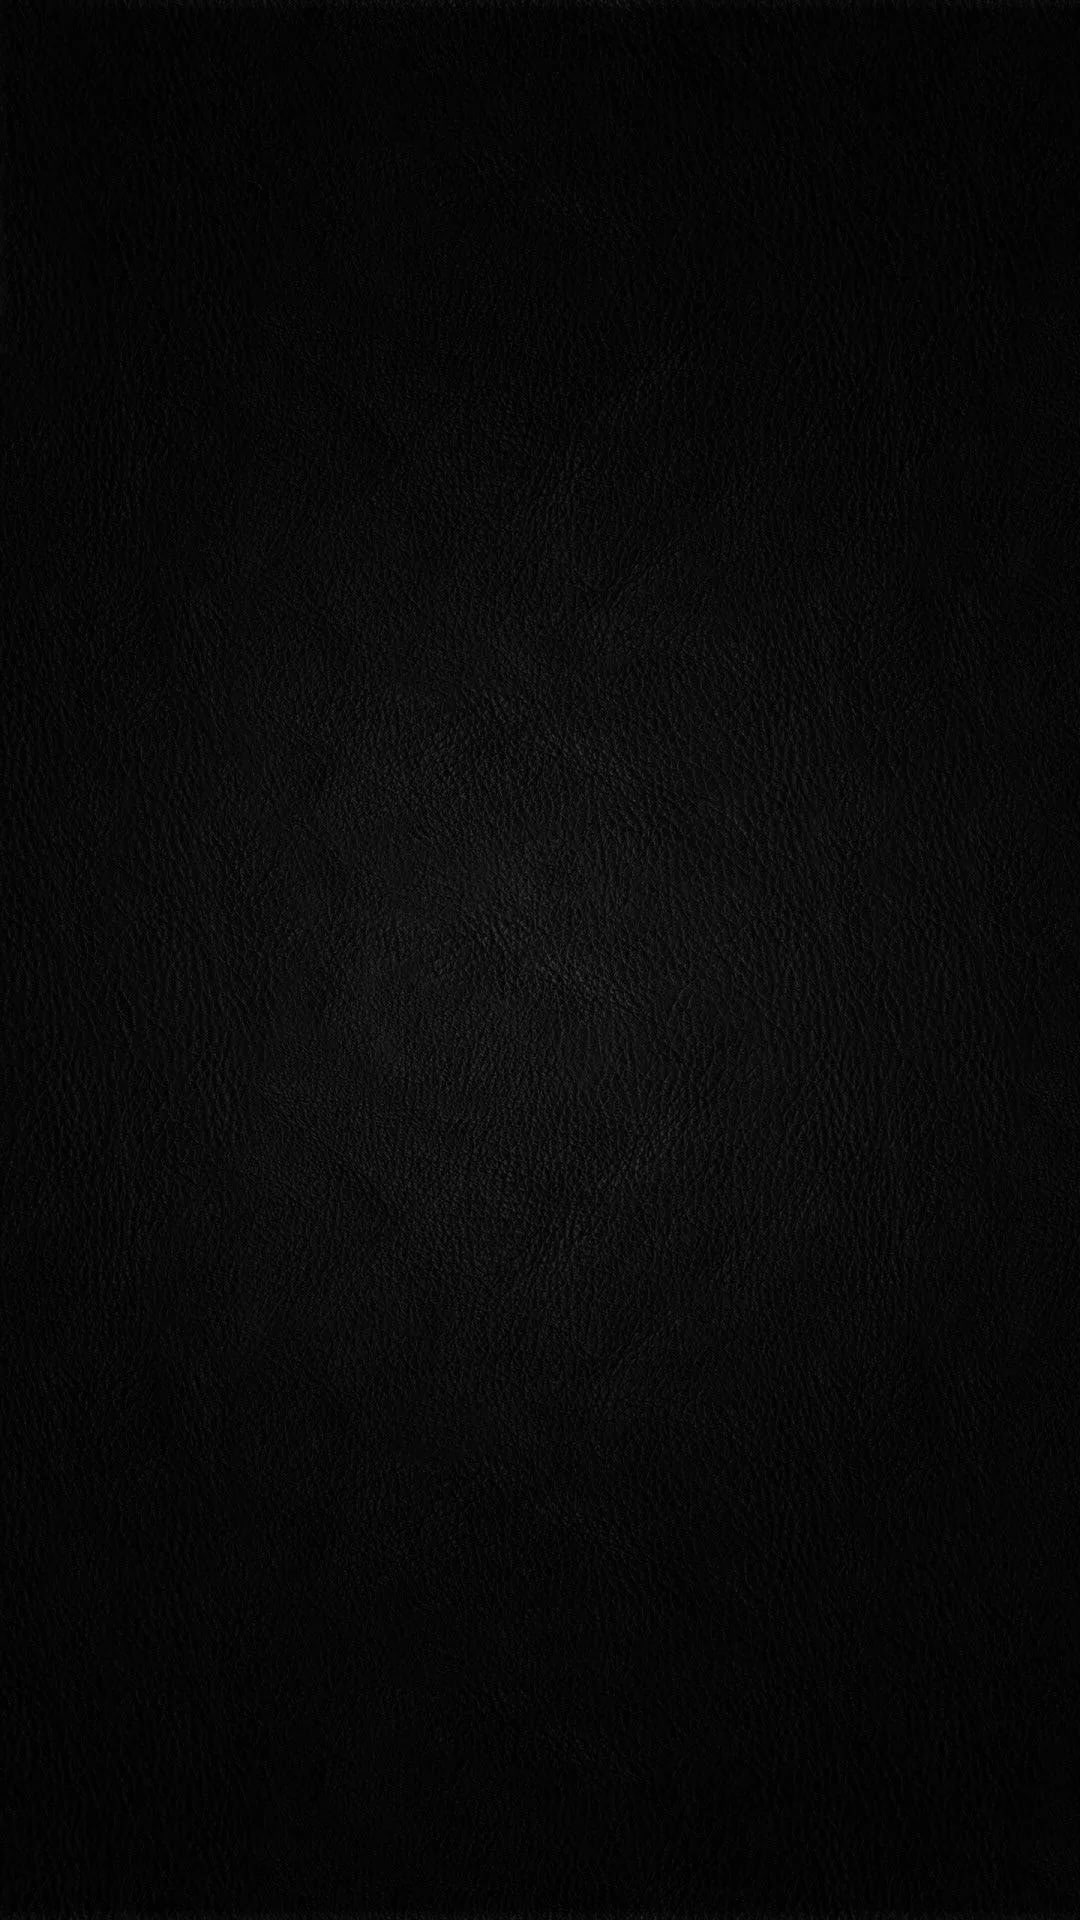 1080p Black Screen Wallpaper iPhone